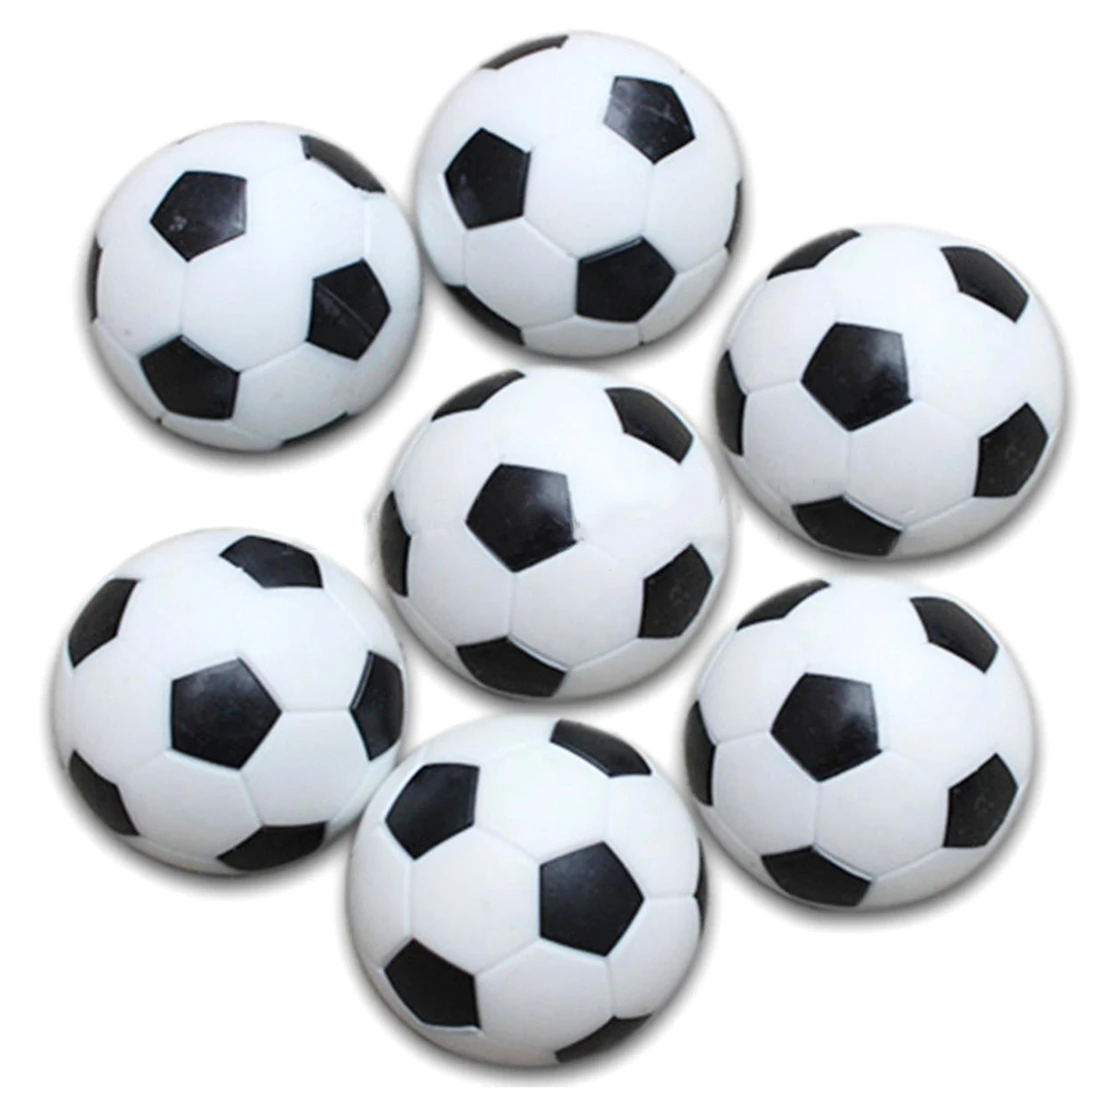 5x пластик 32 мм Футбол крытый настольный футбол мяч заменить черный + белый